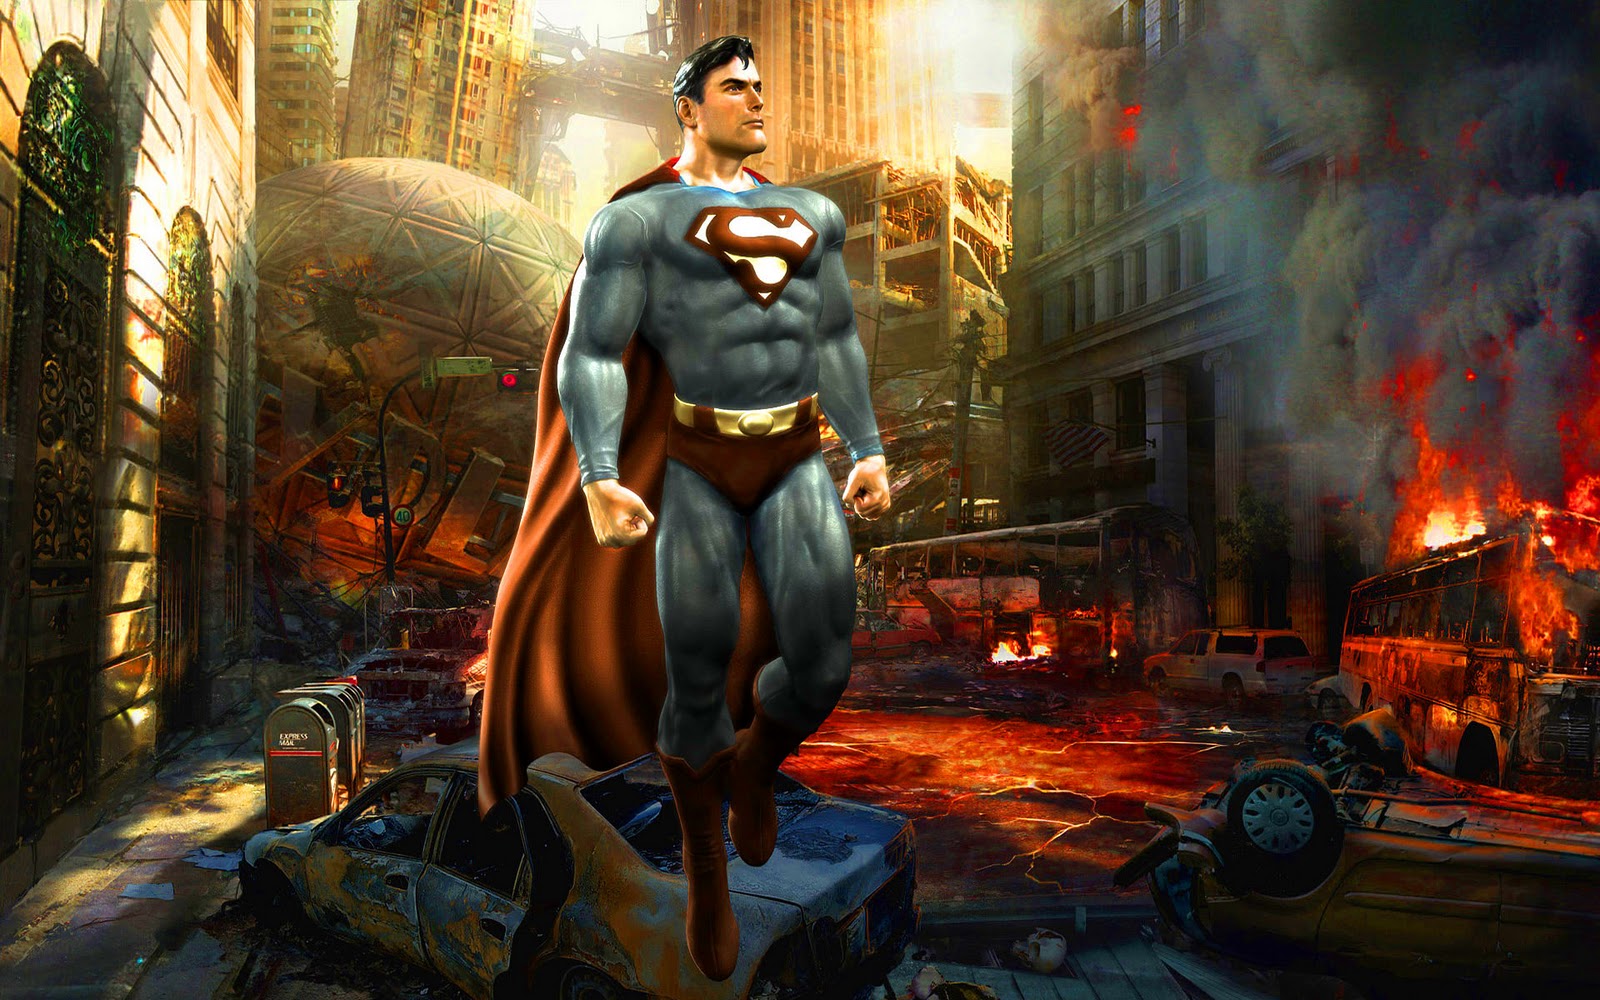 http://2.bp.blogspot.com/-6zCr44bca5E/TZnGDlWNZWI/AAAAAAAAGj4/yvhlkzHWwRw/s1600/Superman-achtergronden-hd-superman-wallpapers-afbeelding-2.jpg